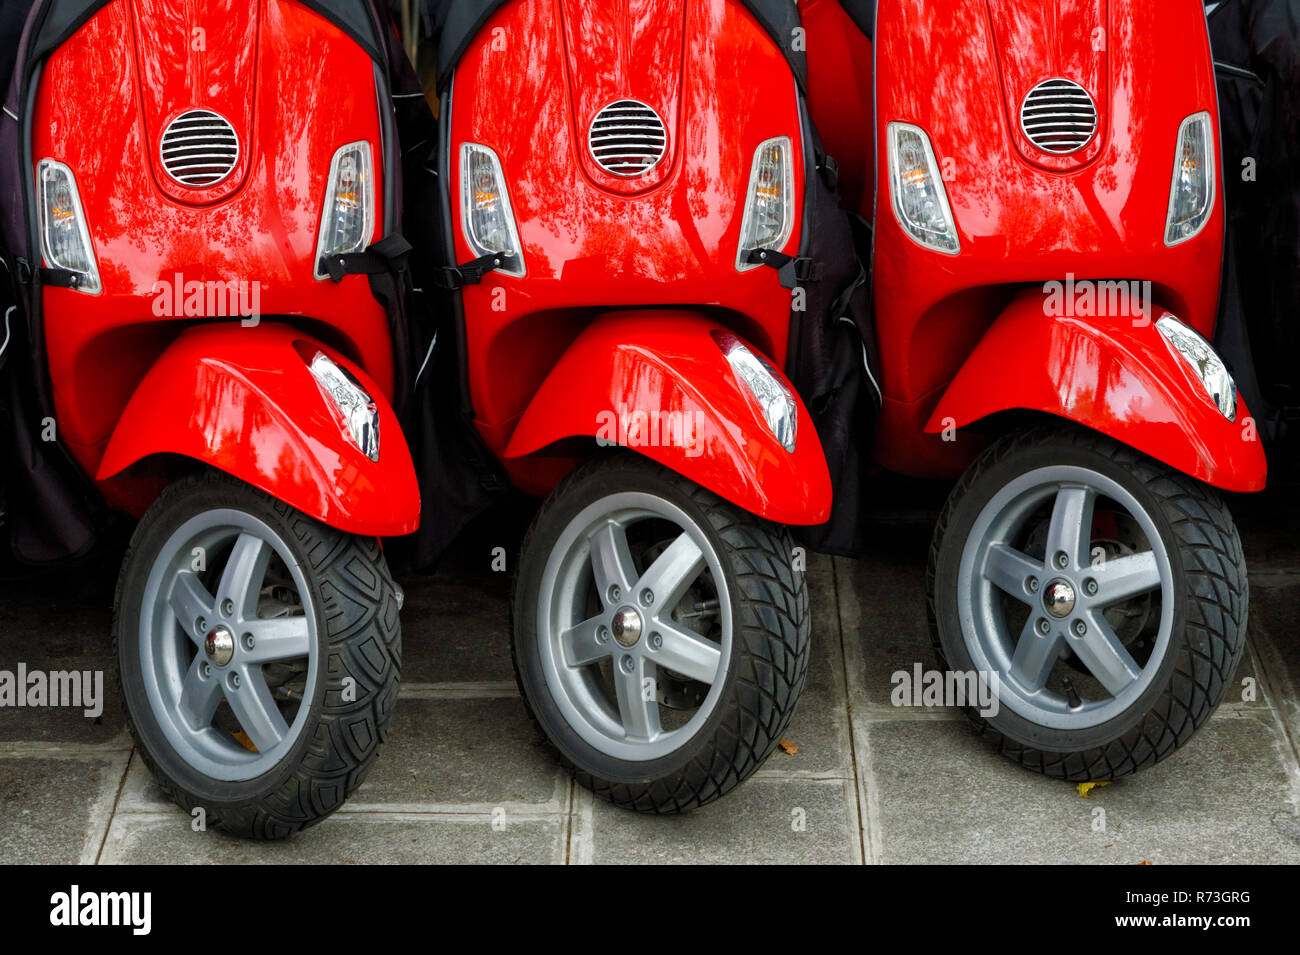 Grupo de tres motos rojas, dispuestas en fila, aparcado al aire libre Foto de stock